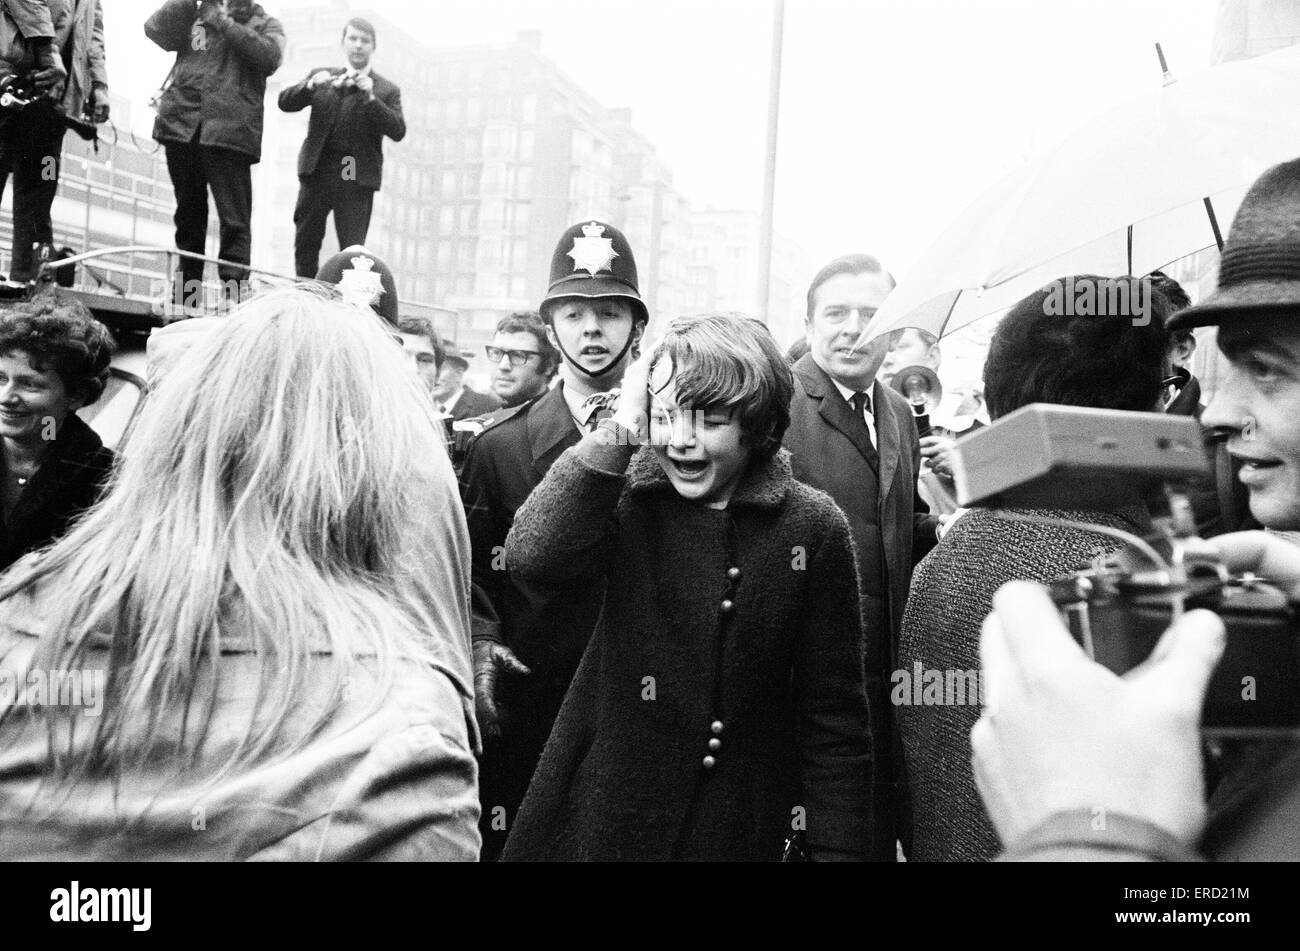 Jeudi 28 novembre 2013 Paul McCartney Linda Eastman à Marylebone, Londres, du Bureau d'enregistrement mercredi 12 mars 1969. Banque D'Images